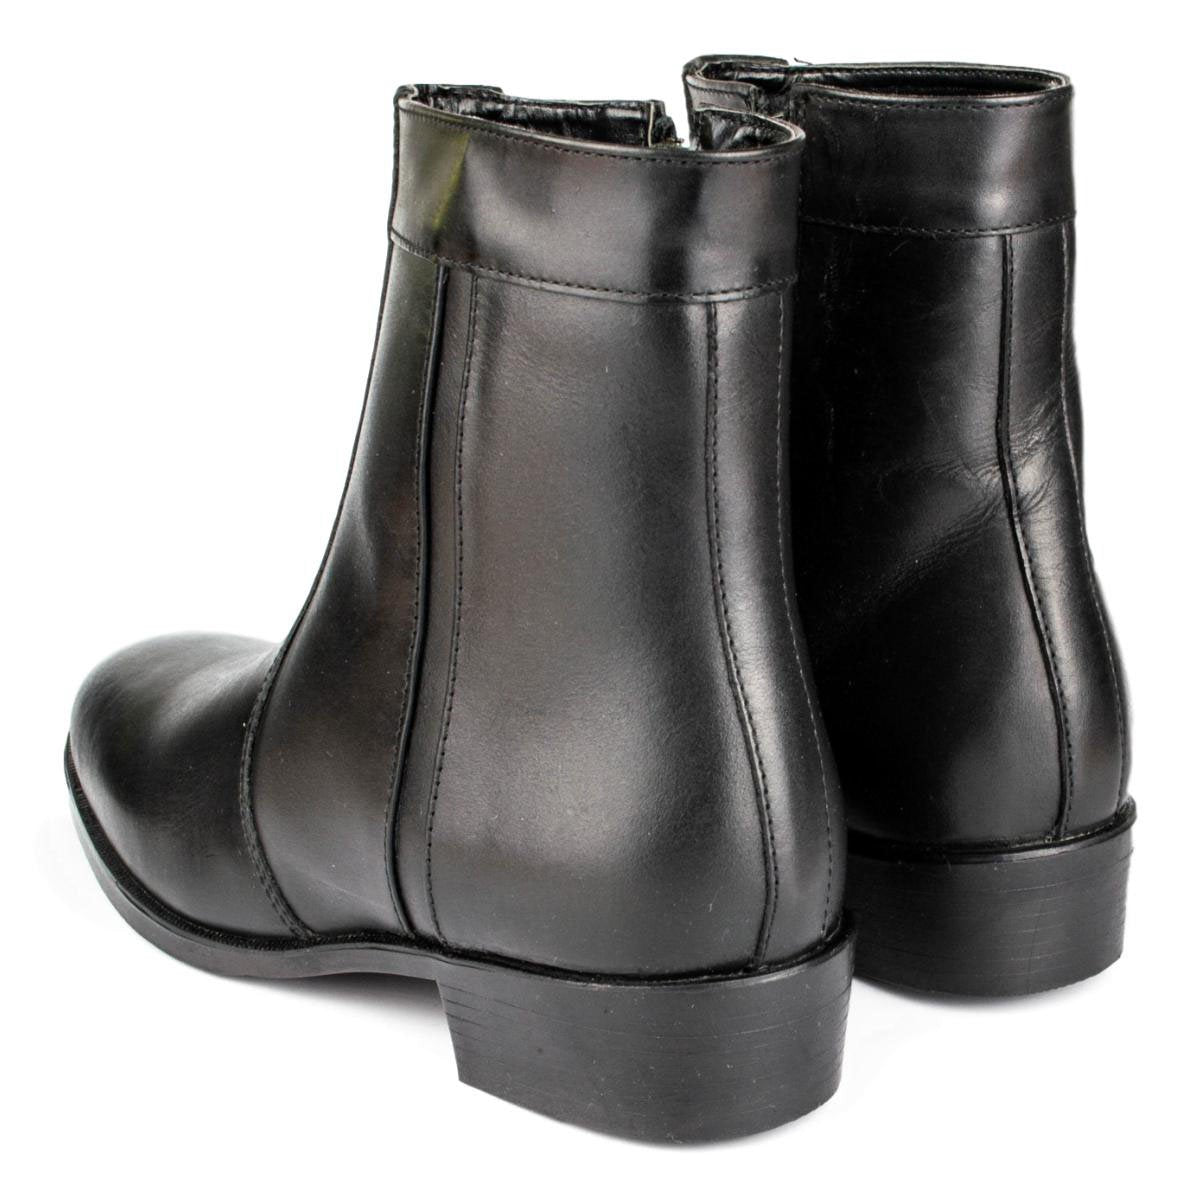 Mens Zip Up Boot in Black - Watney Shoes 